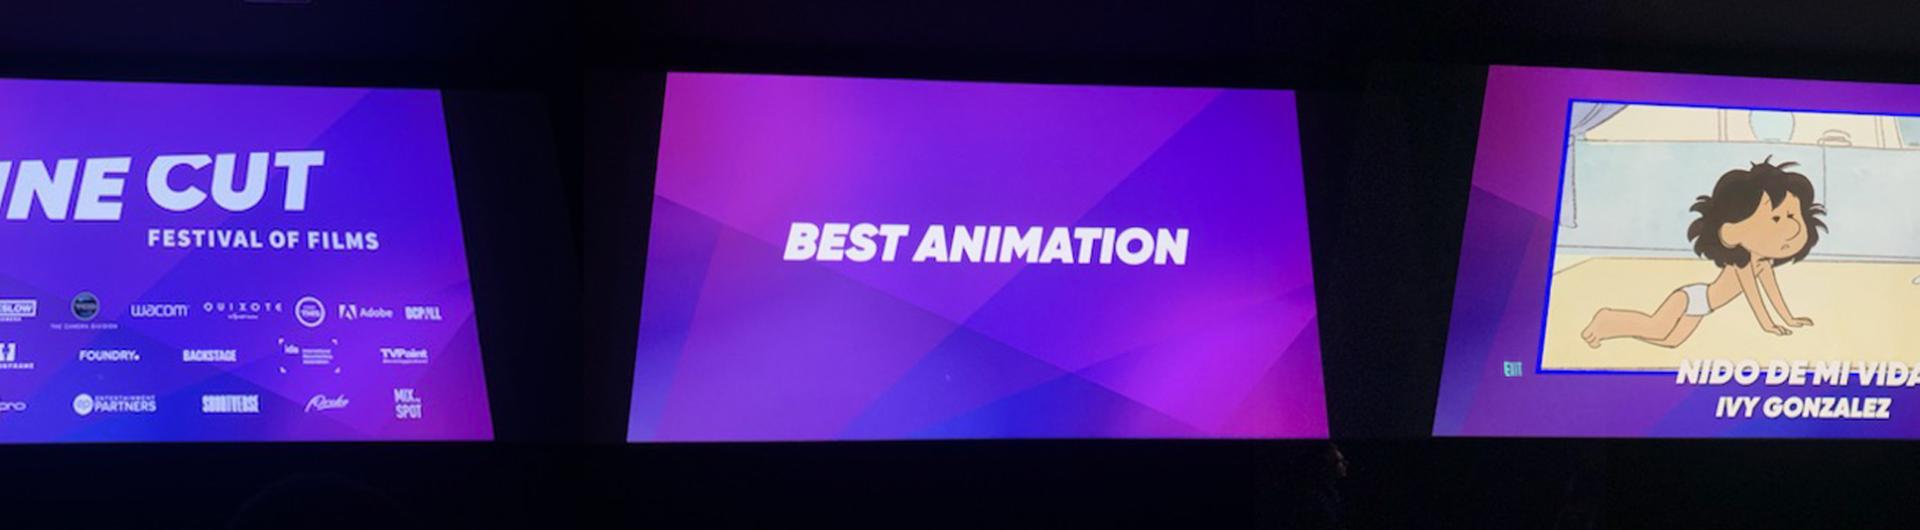 Animation Still from KCET Awards